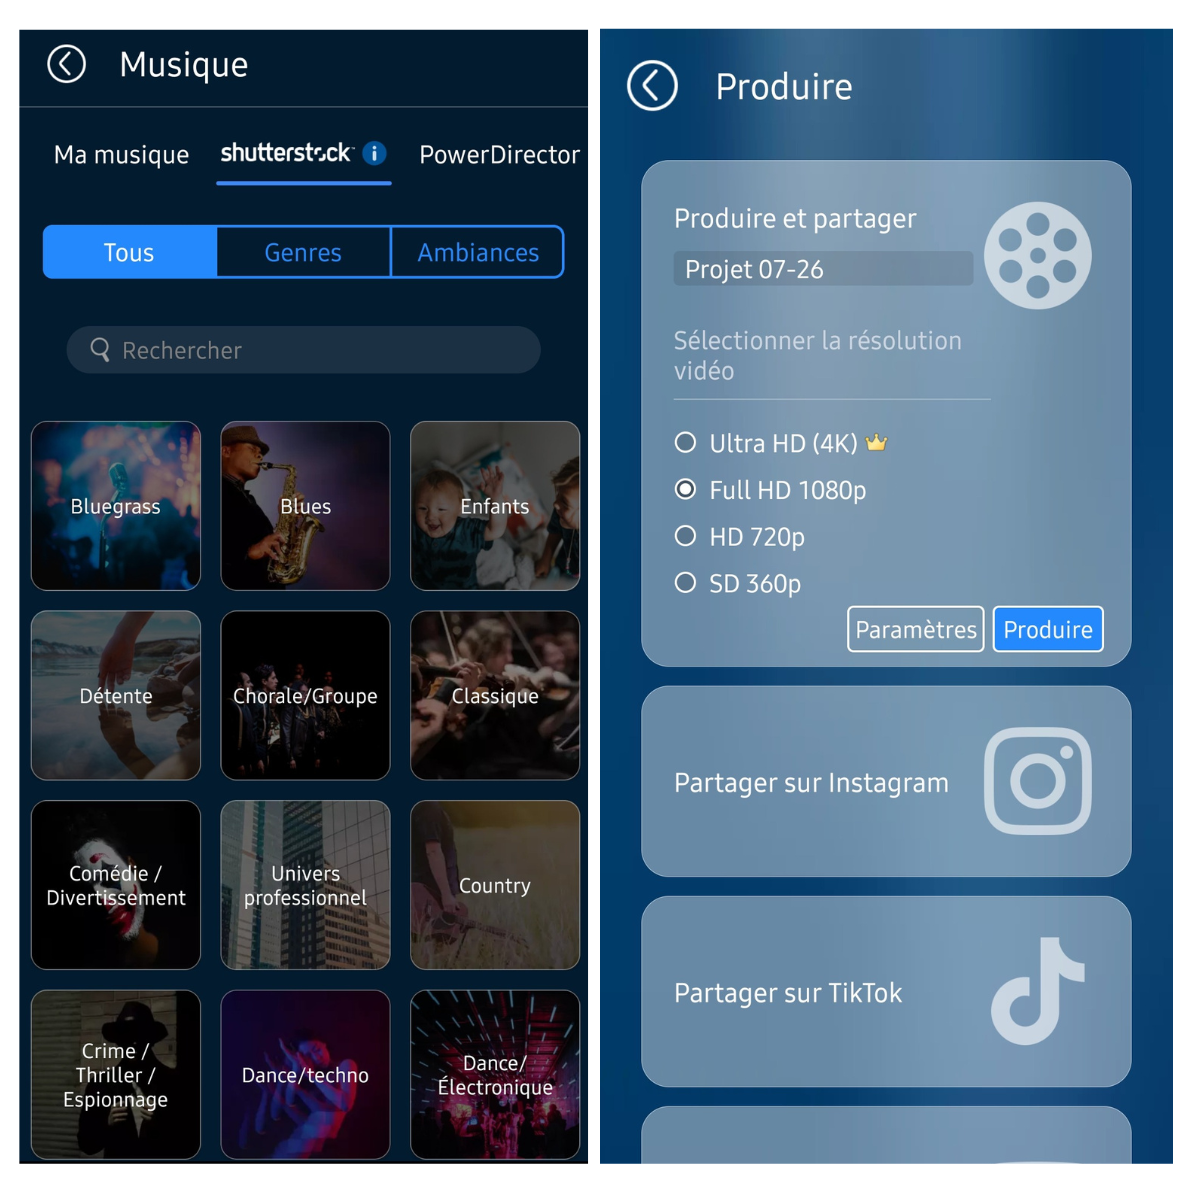 PowerDirector offre une vaste bibliothèque de musiques classées par genres et ambiances, facilitant la personnalisation sonore des projets vidéo.